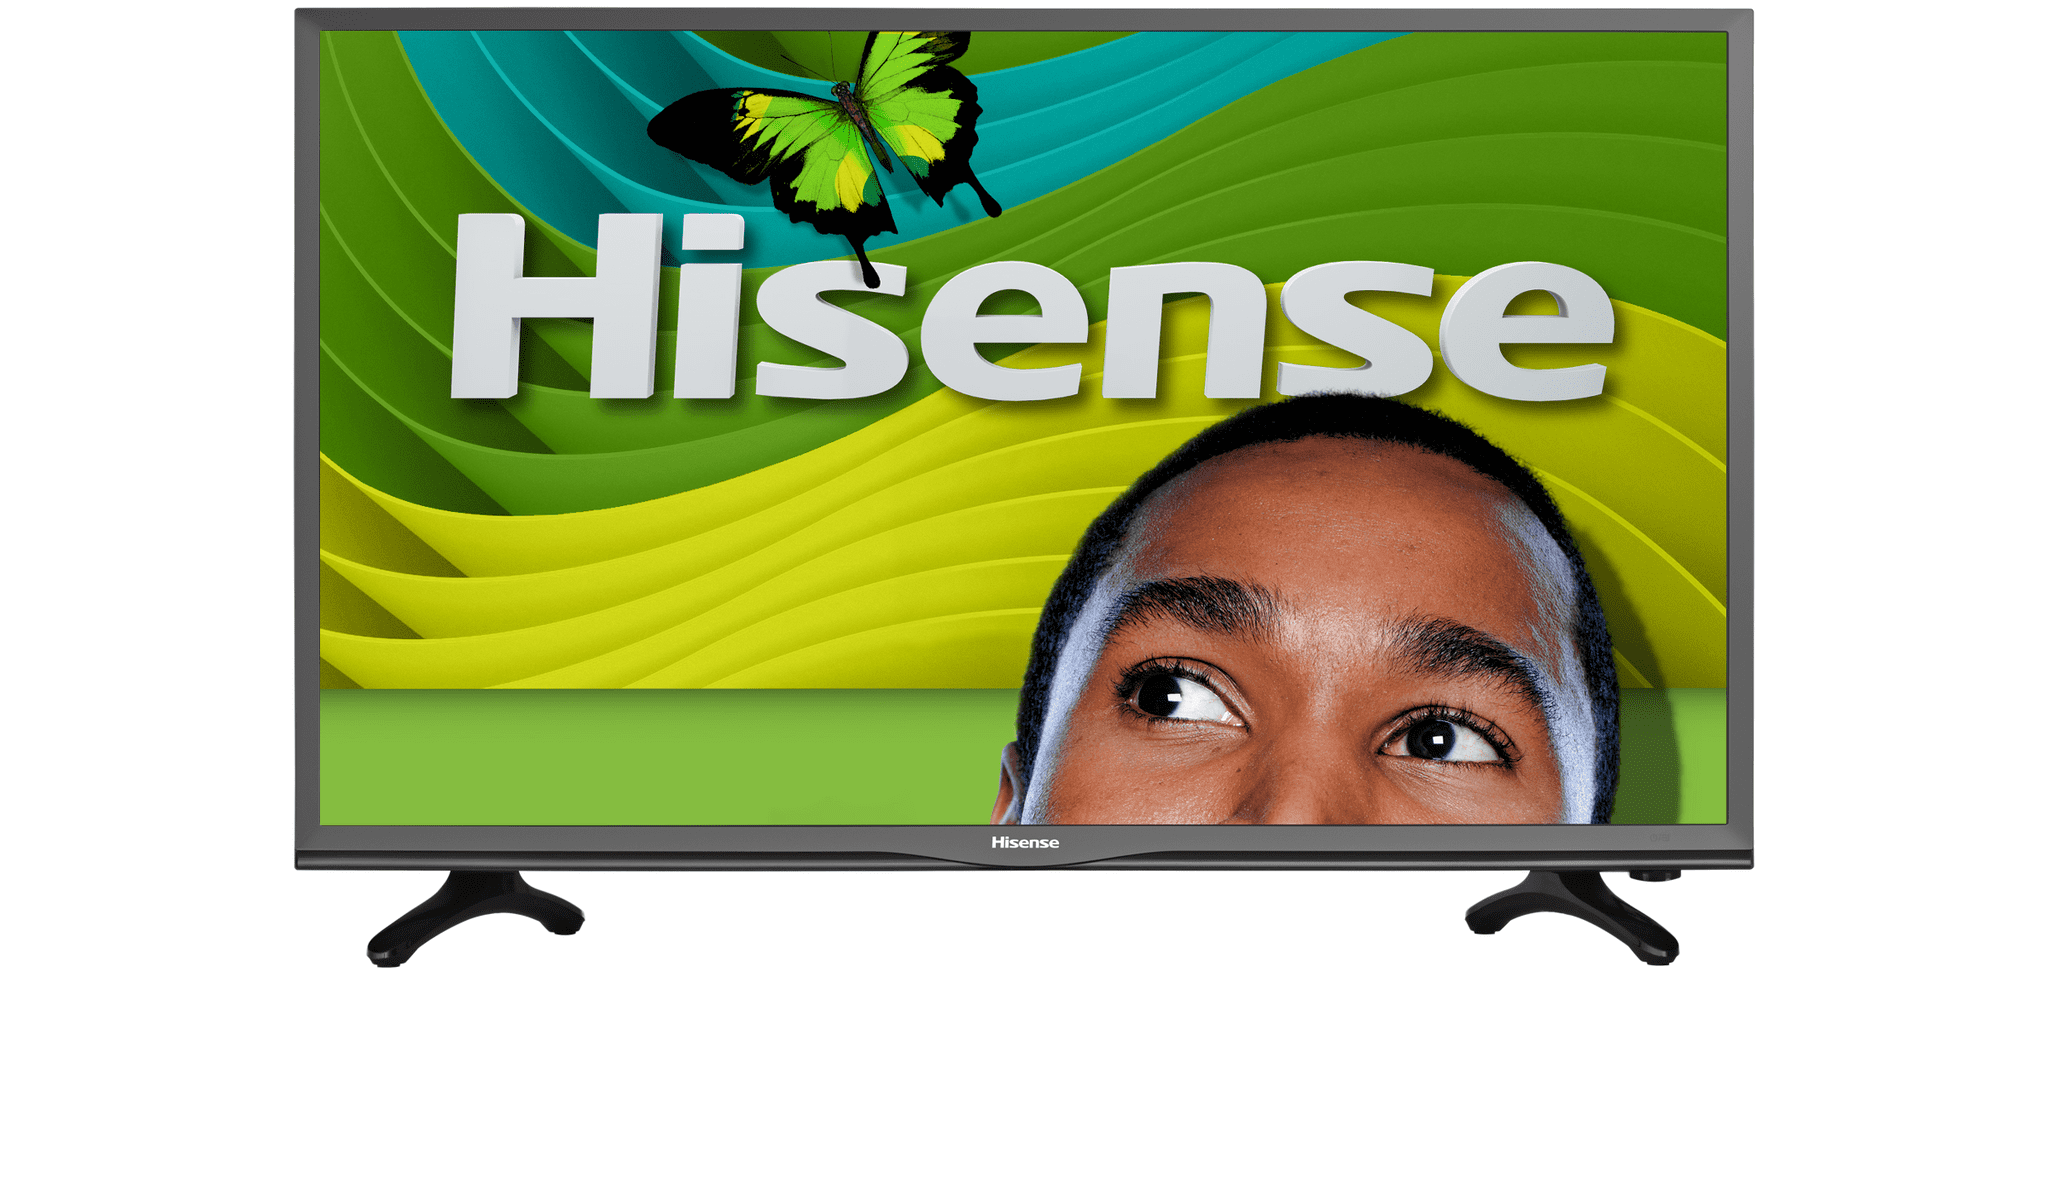 Hisense 43" Class - Full HD LED TV - 1080p, 60Hz (43H3D ...